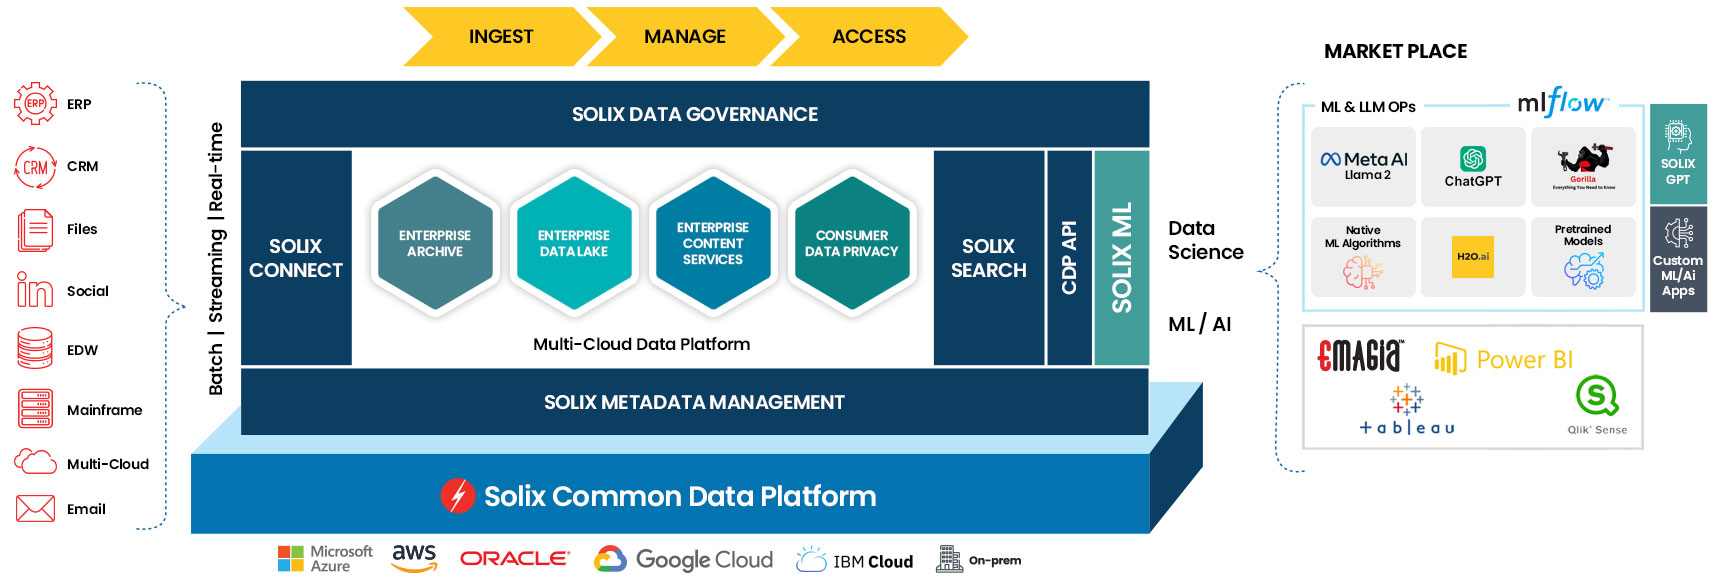 cloud data management platform solixcloud